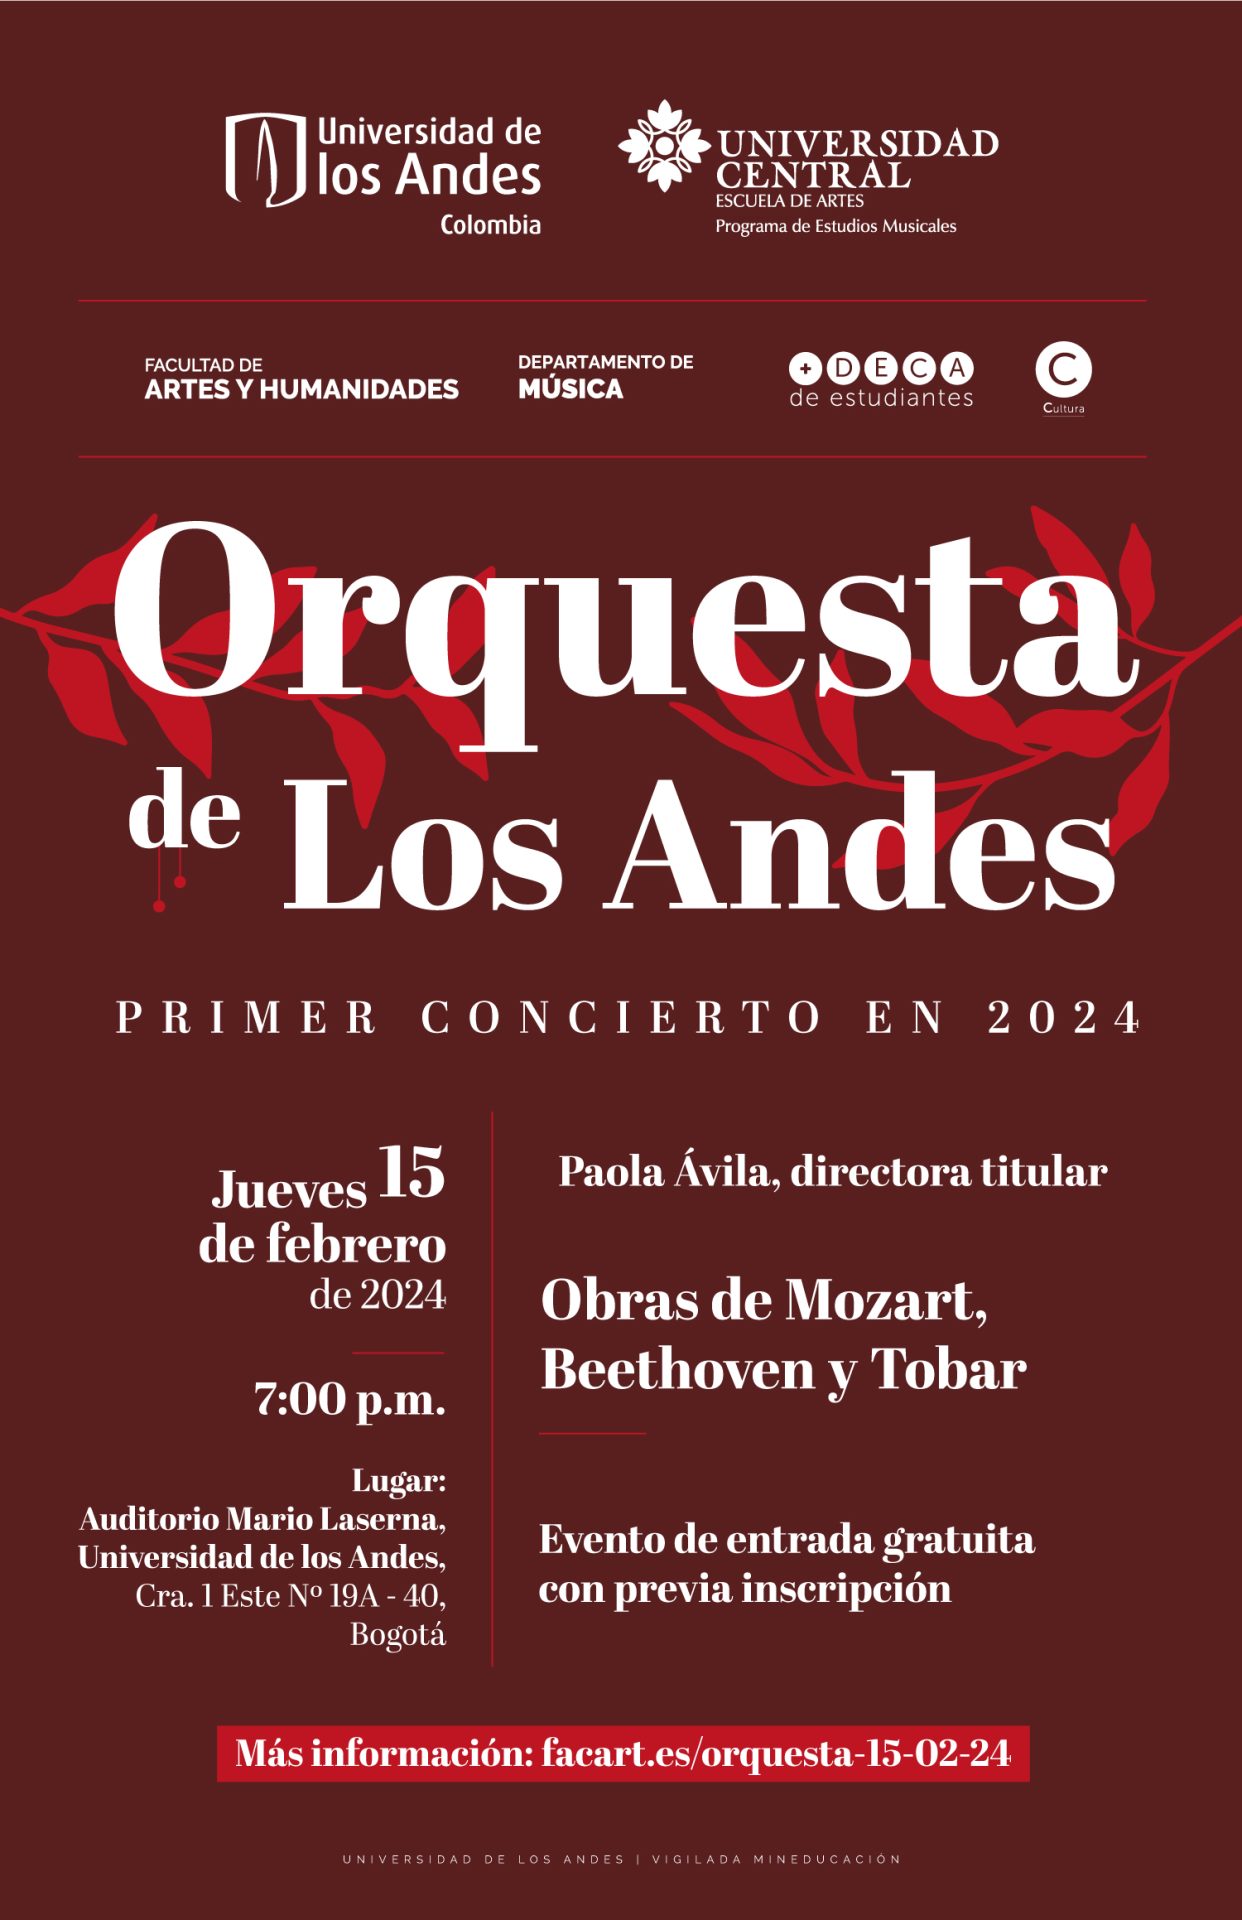 Jueves 15 de febrero de 2024 a las 7:00 p.m. en el Auditorio Mario Laserna, Universidad de los Andes